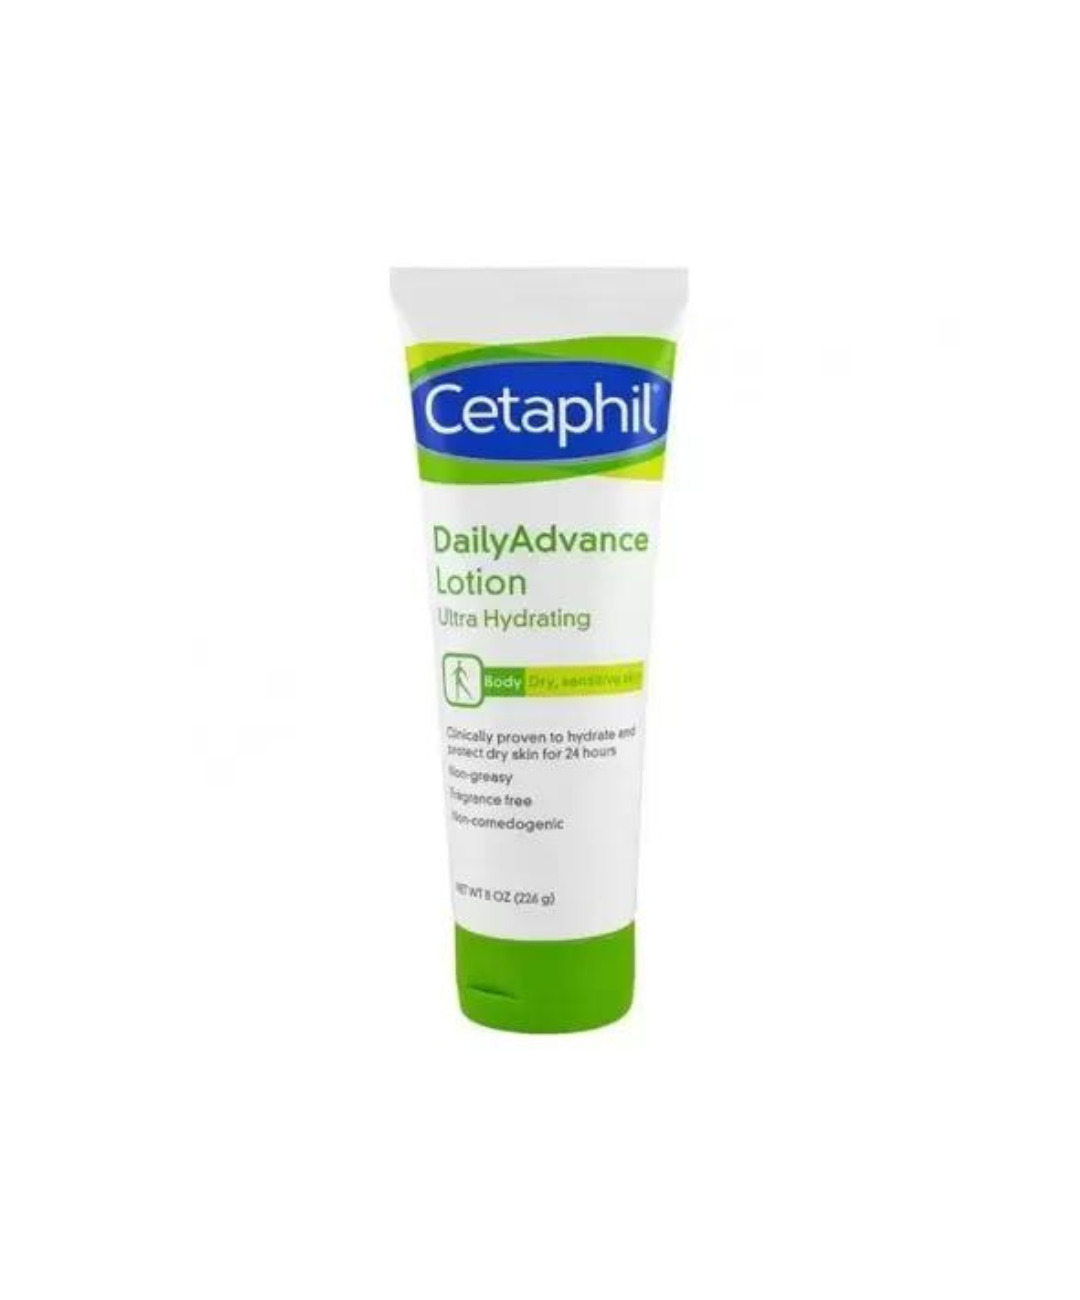 CETAPHIL Crème Hydratante Peau Sèche 50g - Citymall